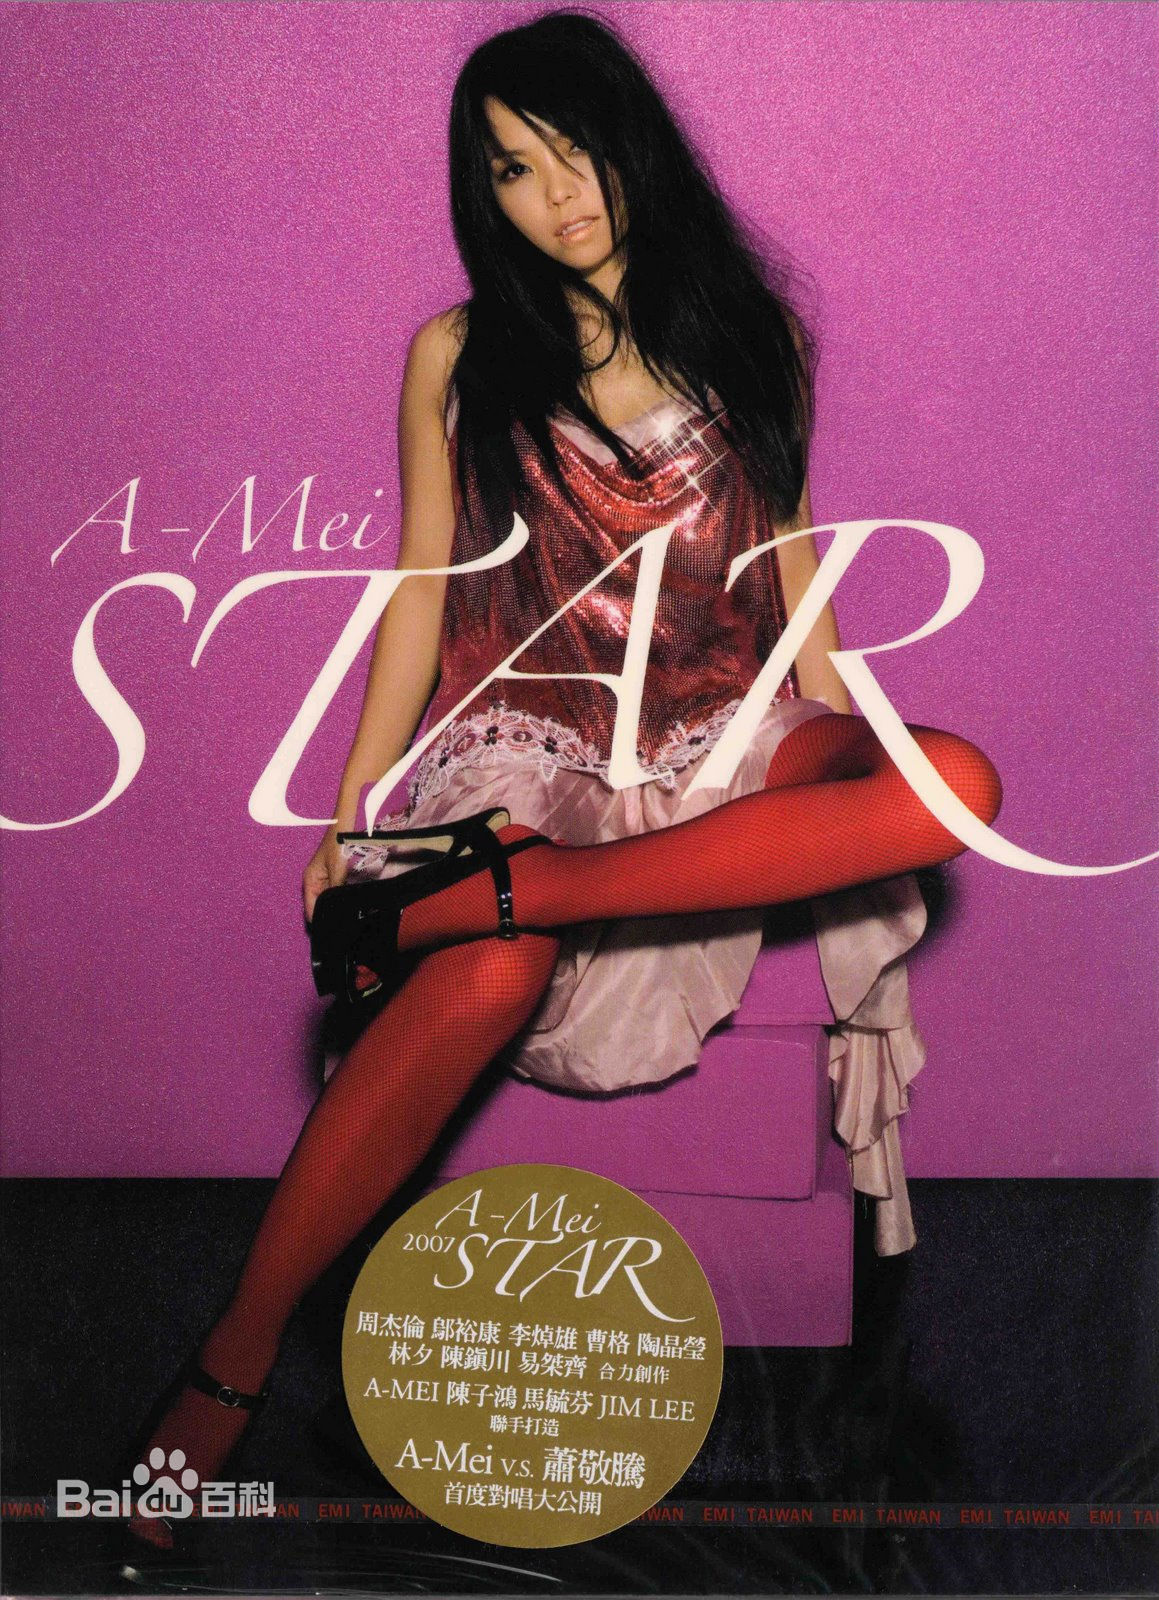 张惠妹 第十四张专辑《STAR》